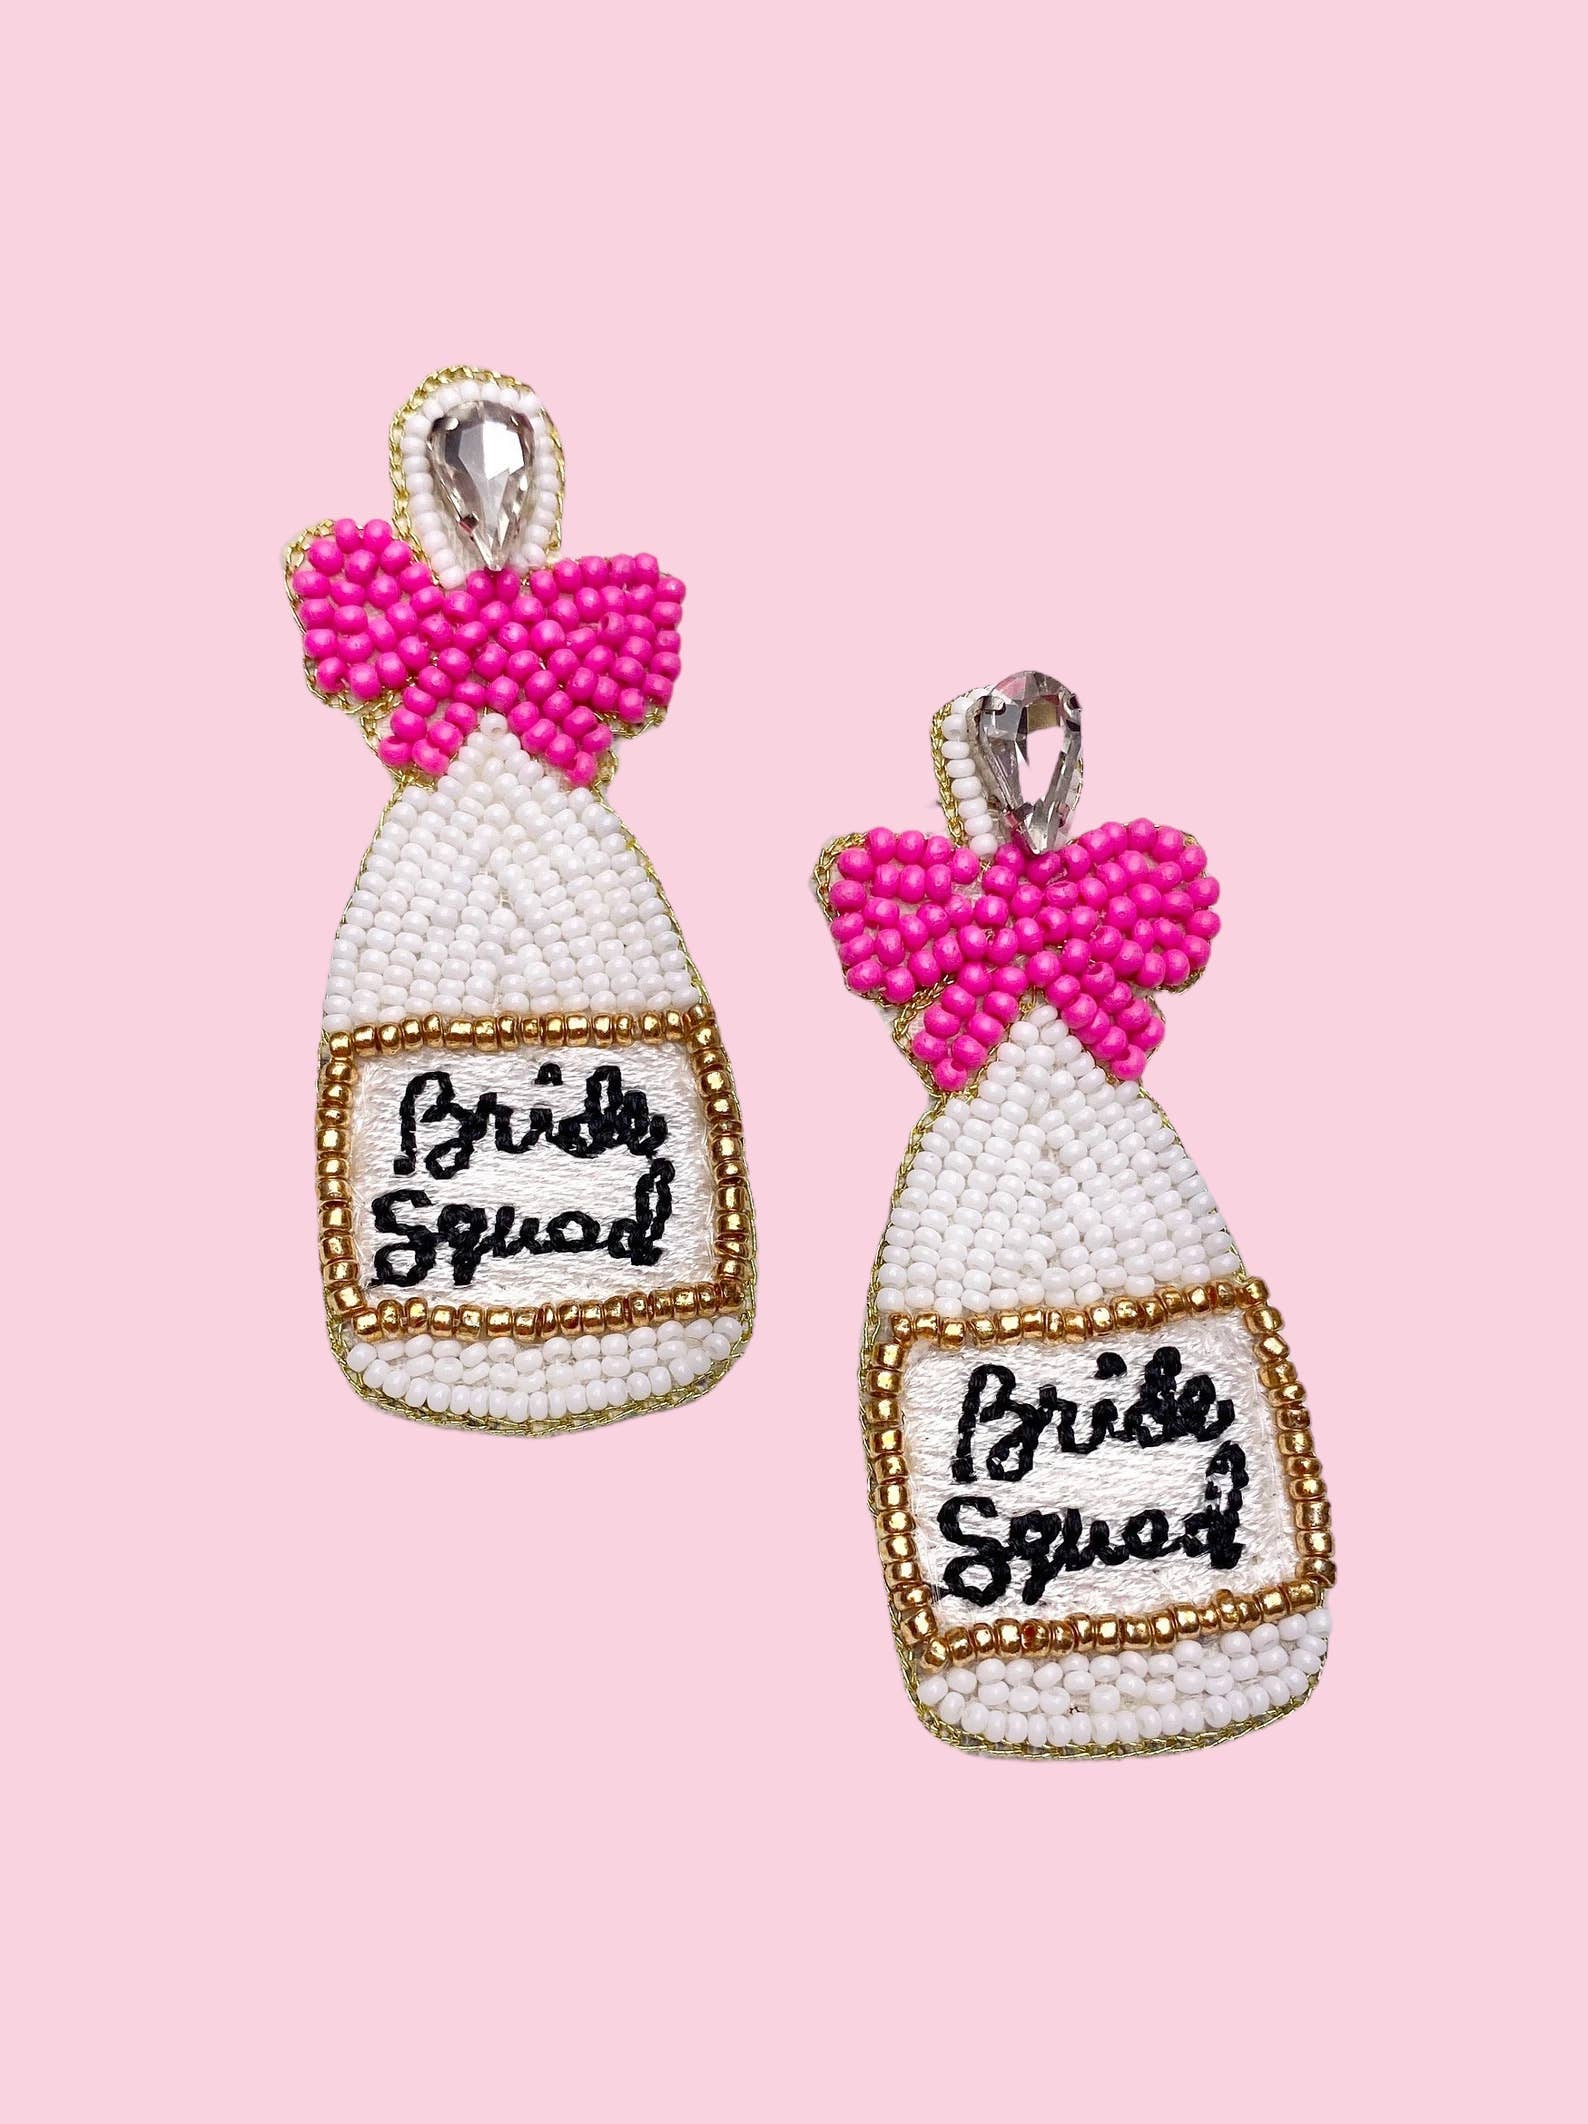 Bride Squad Bottle Earrings